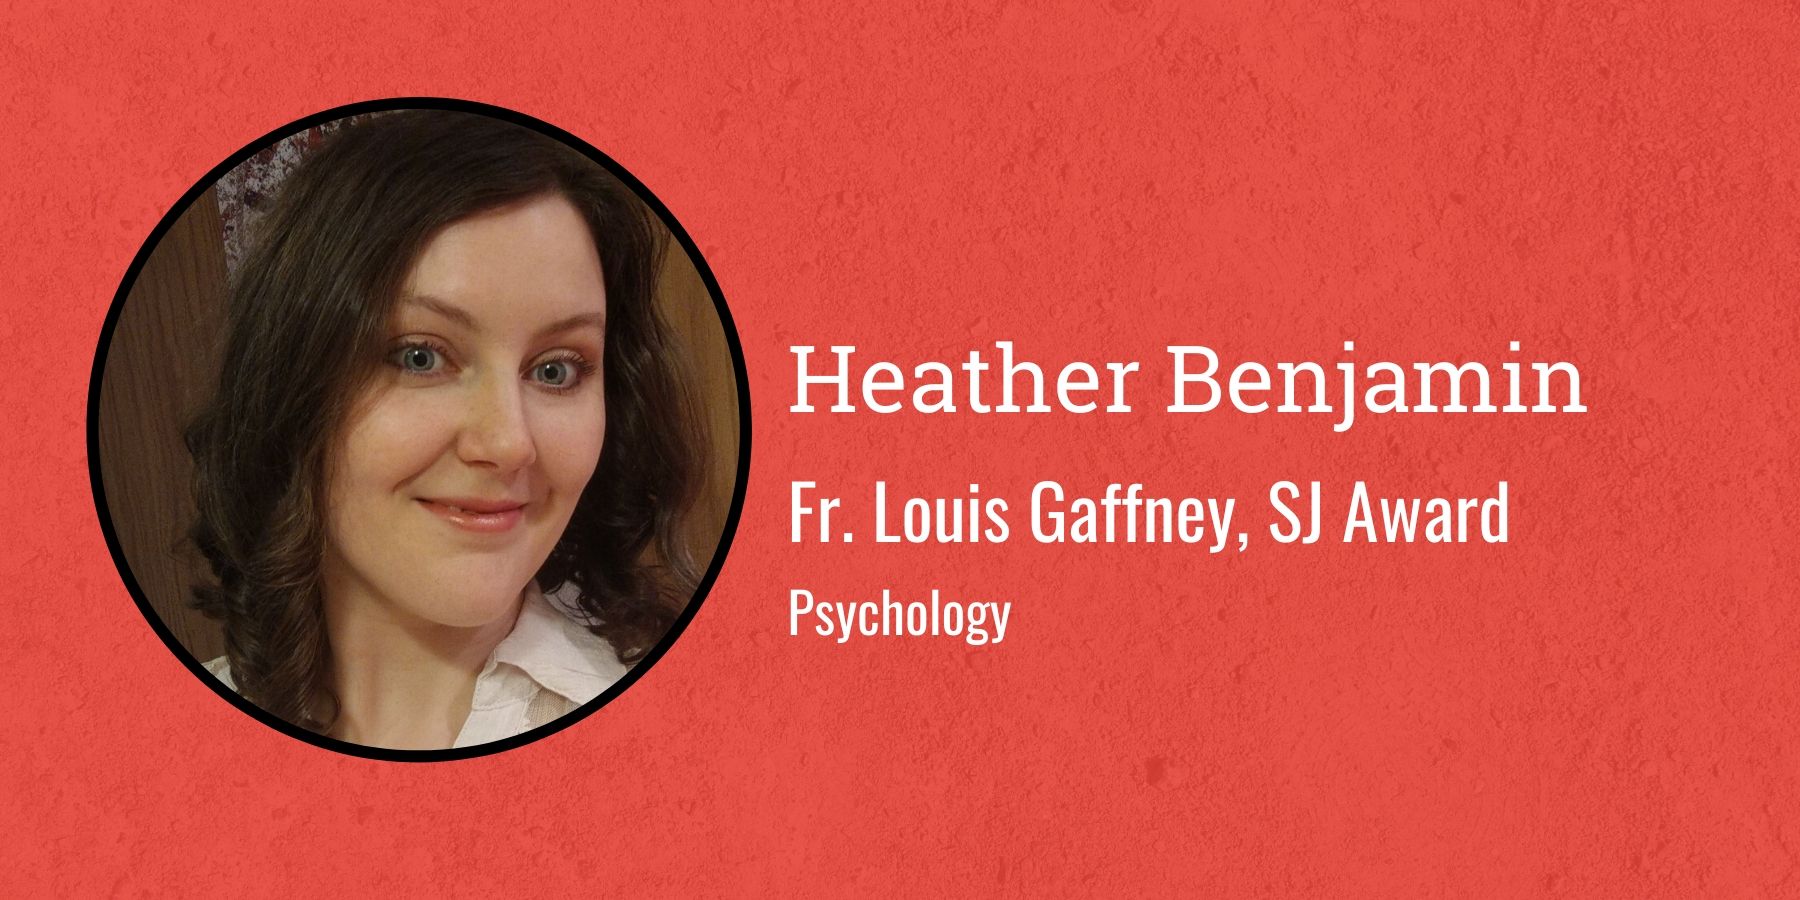 Photo of Heather Benjamin and Text Fr. Louis Gaffney SJ Award, Psychology